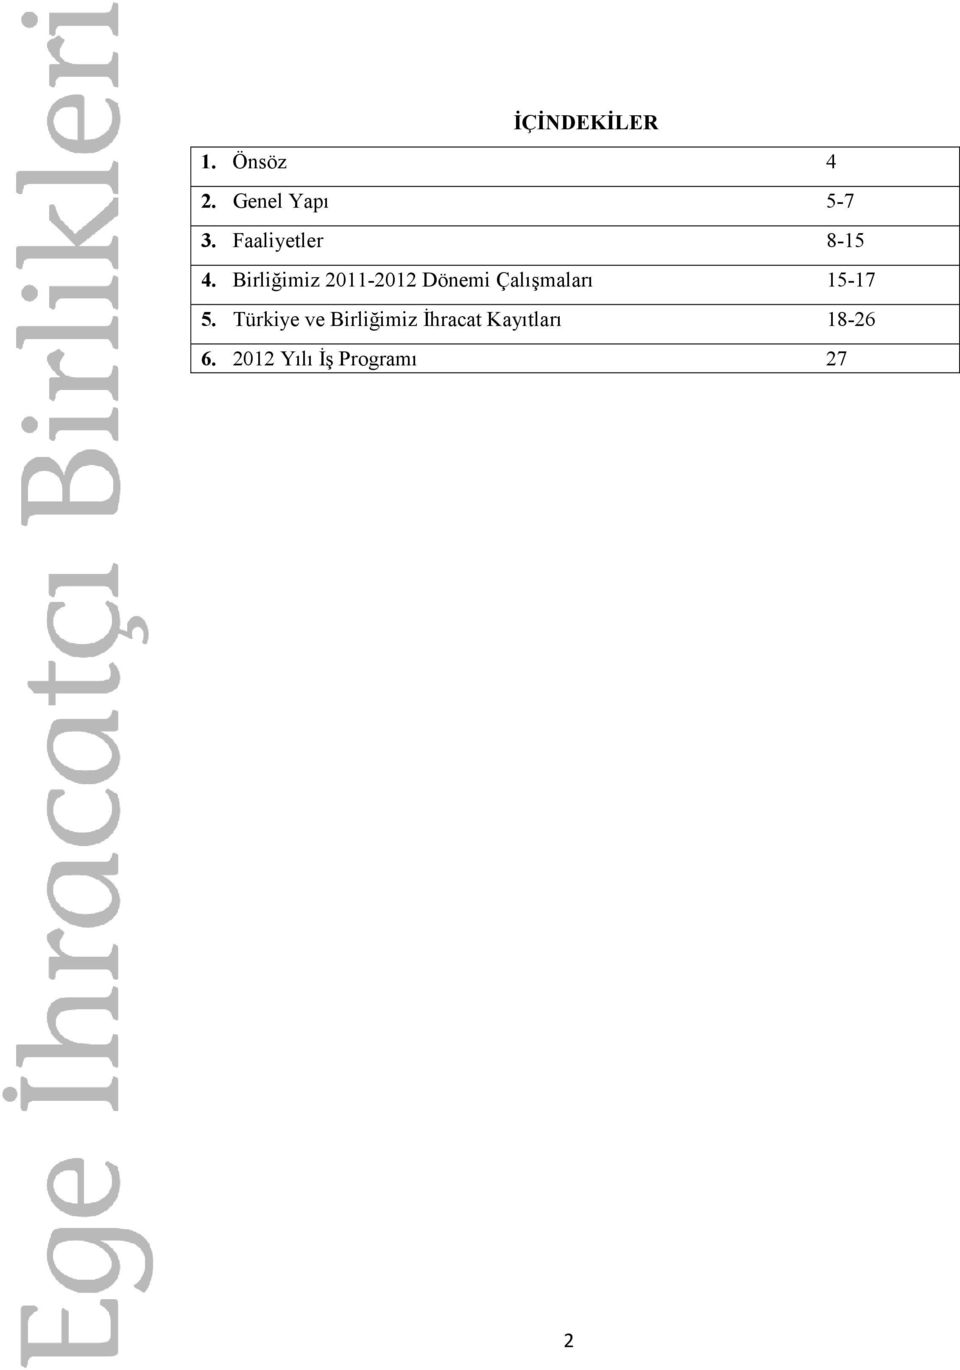 Birliğimiz 2011-2012 Dönemi Çalışmaları 15-17